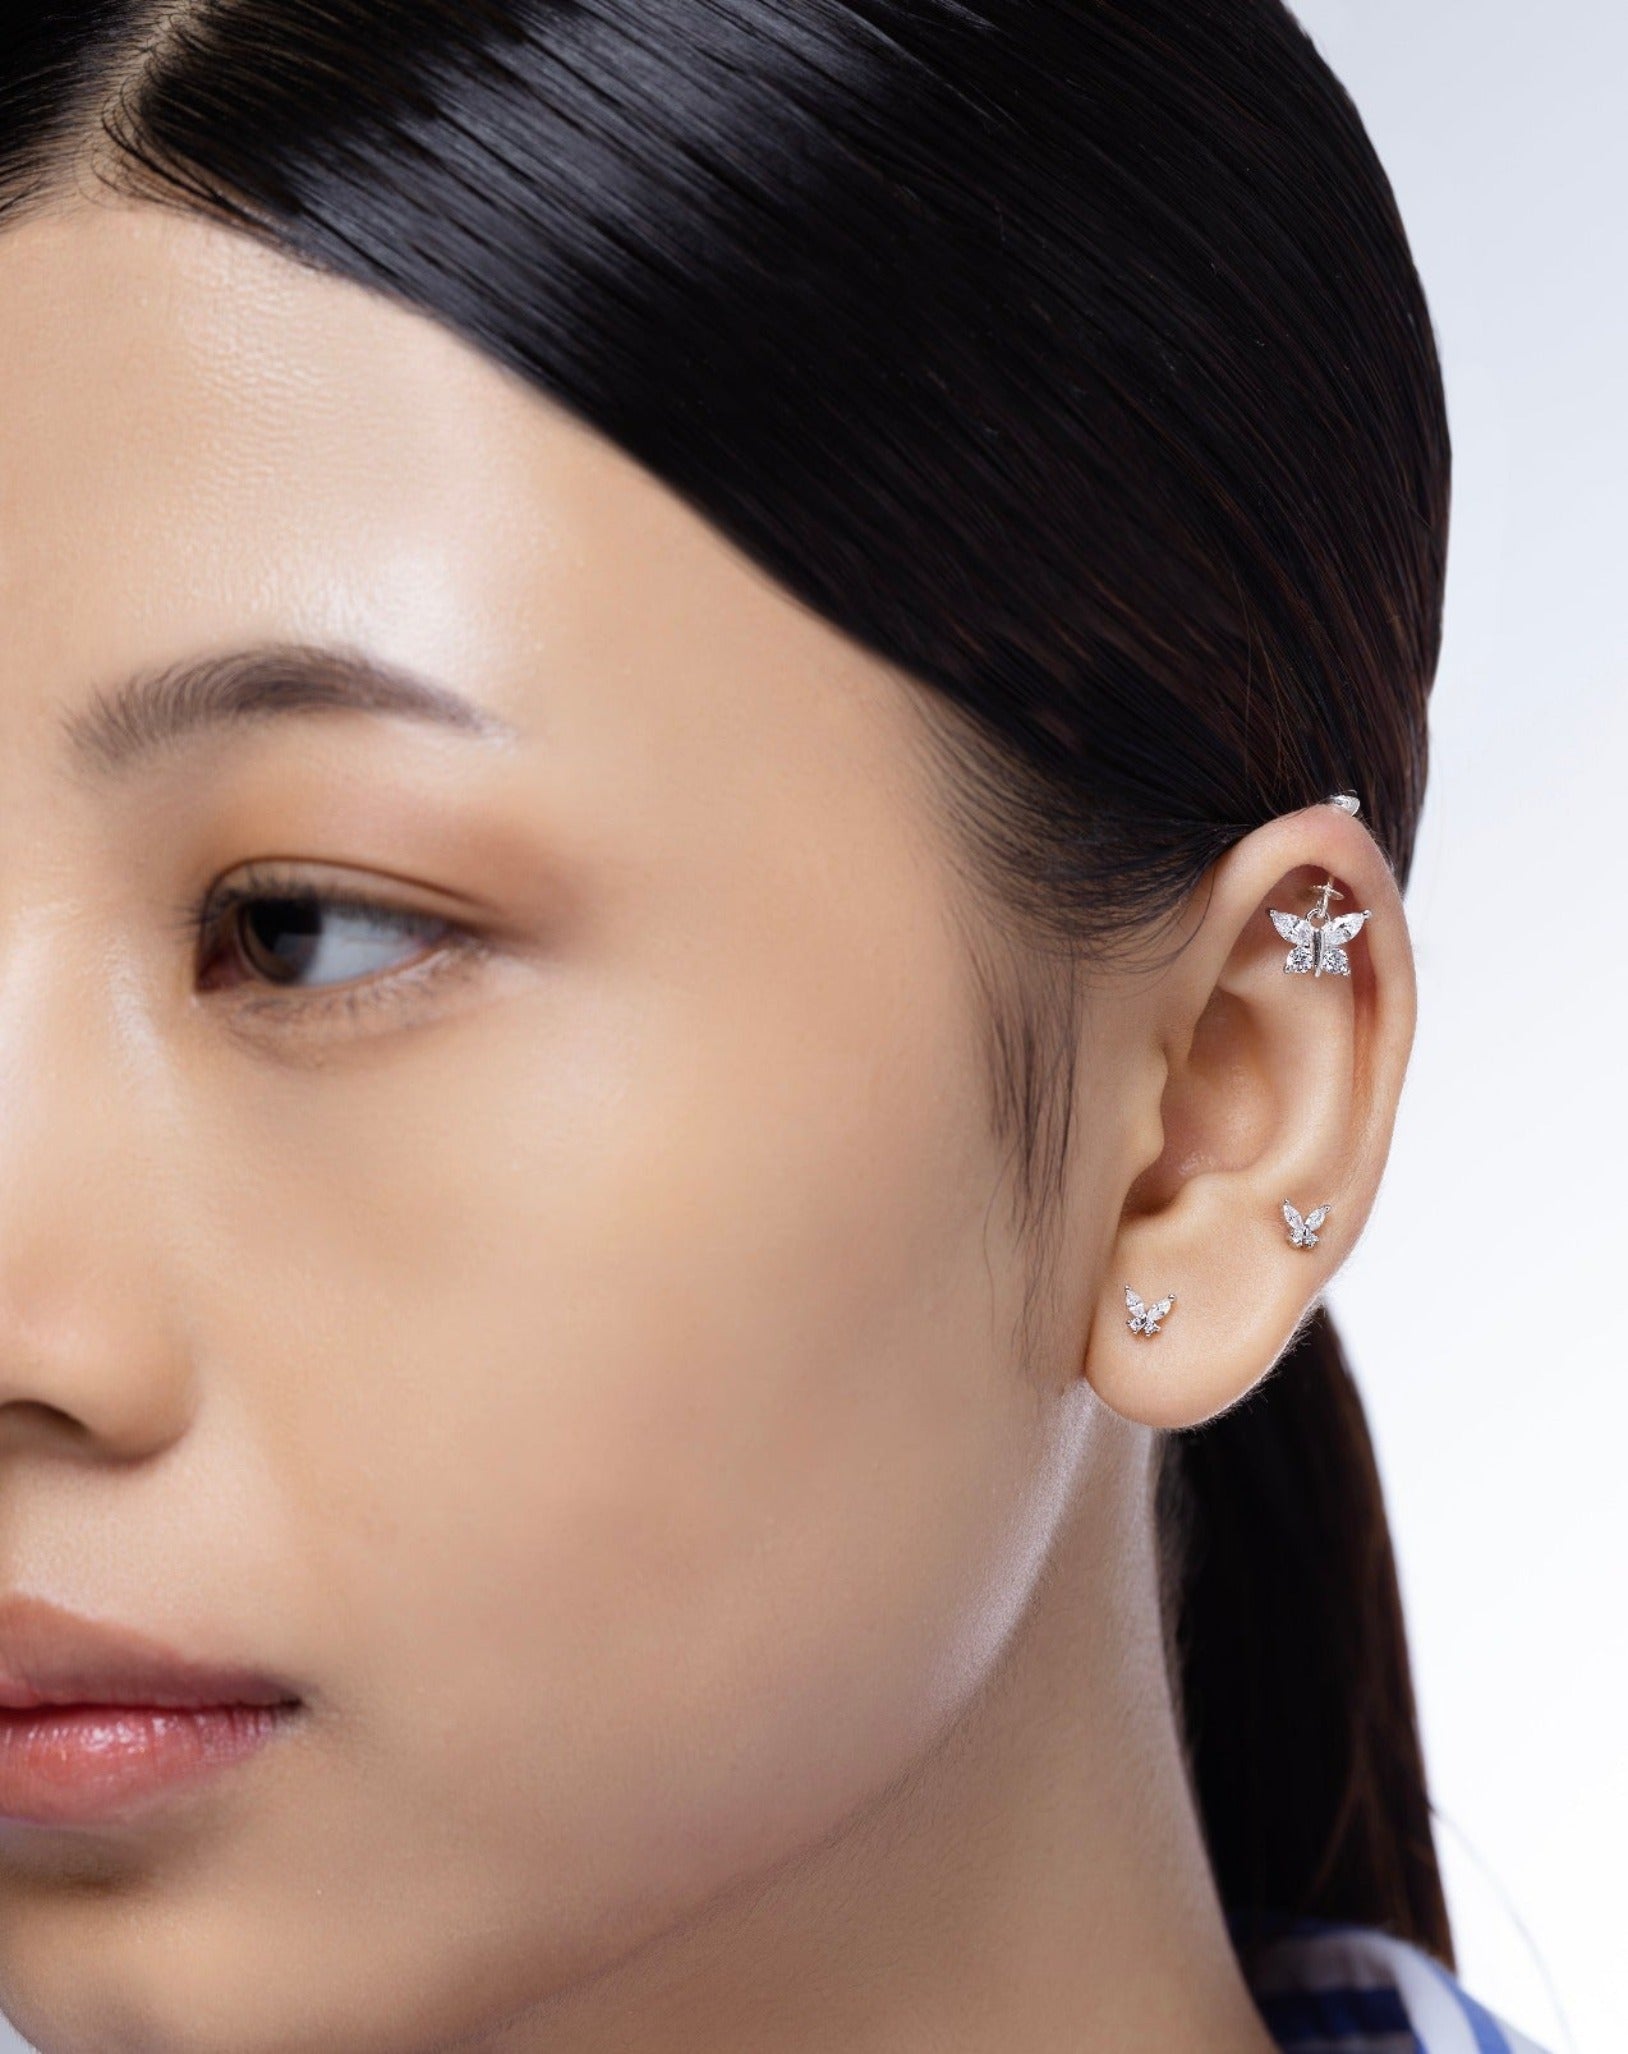 Share 147+ earrings for upper ear lobe super hot